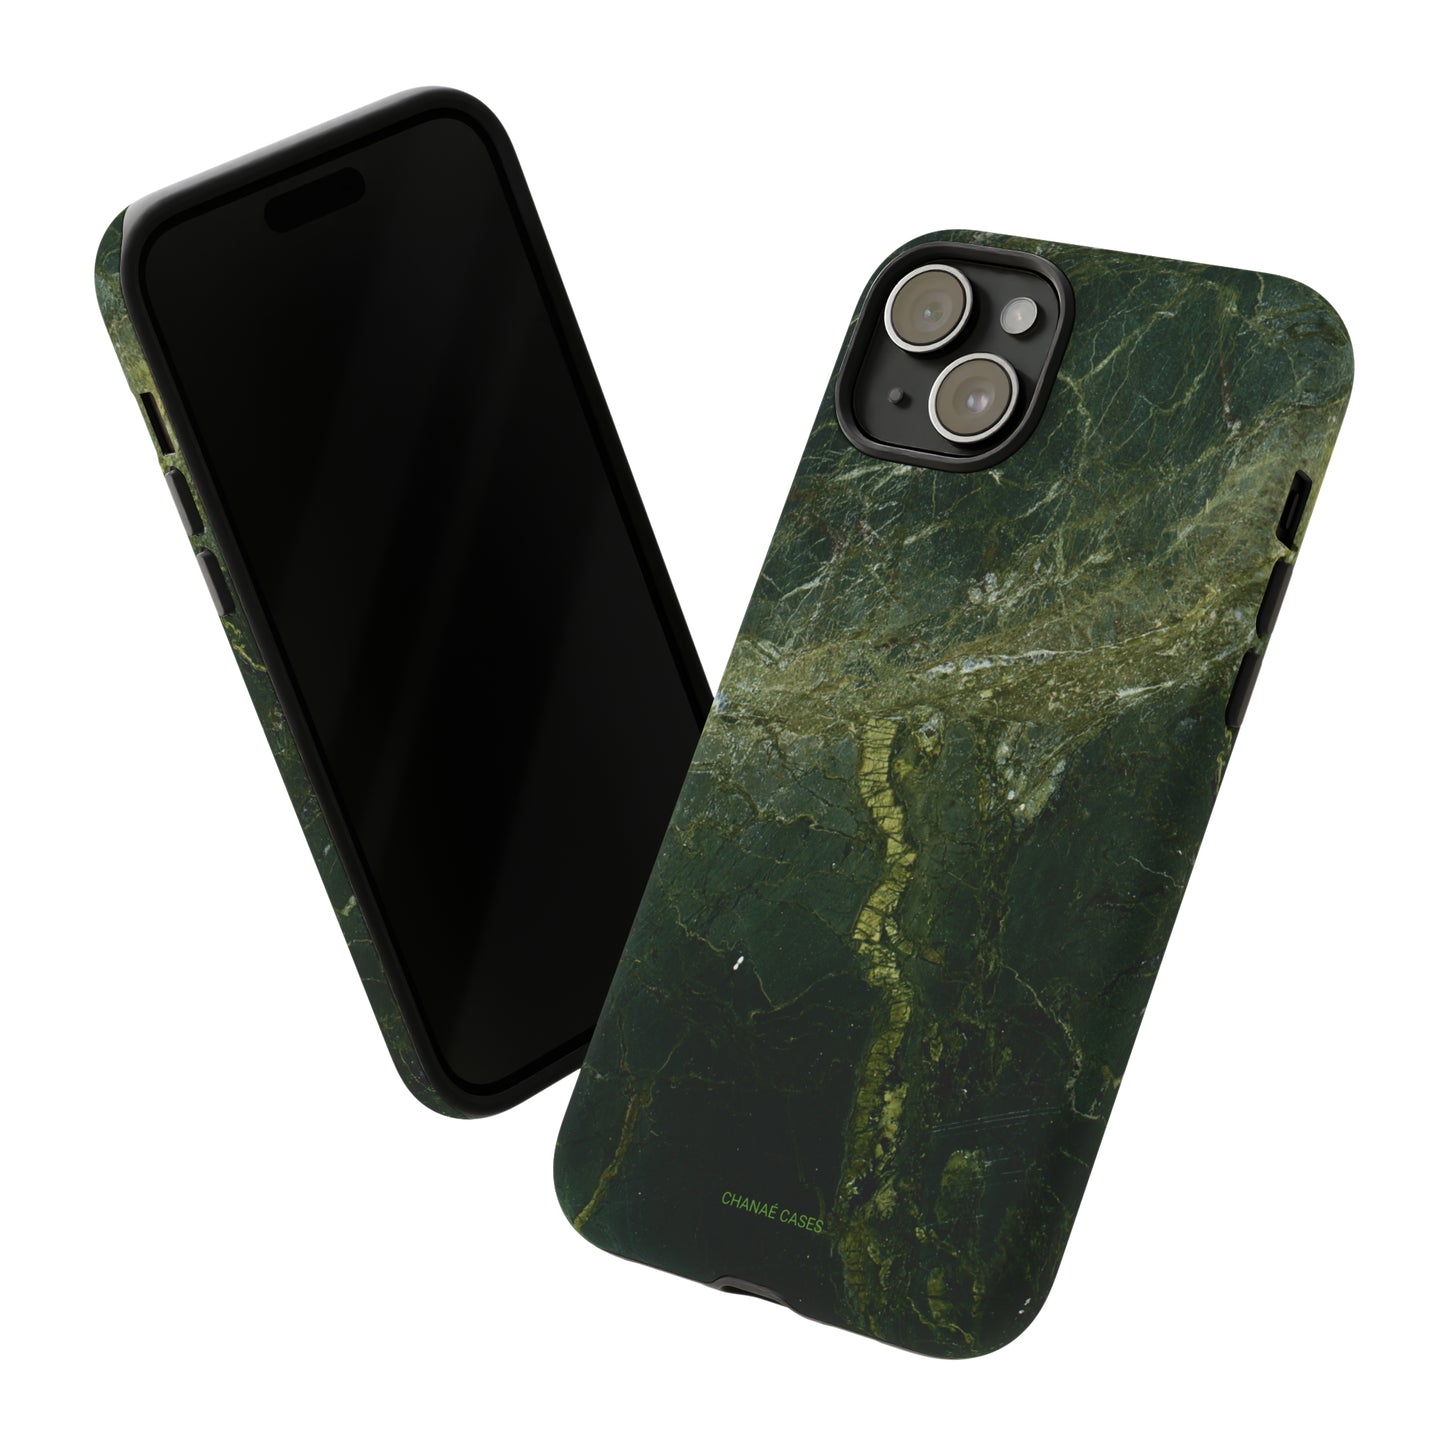 Papaya iPhone "Tough" Case (Green)